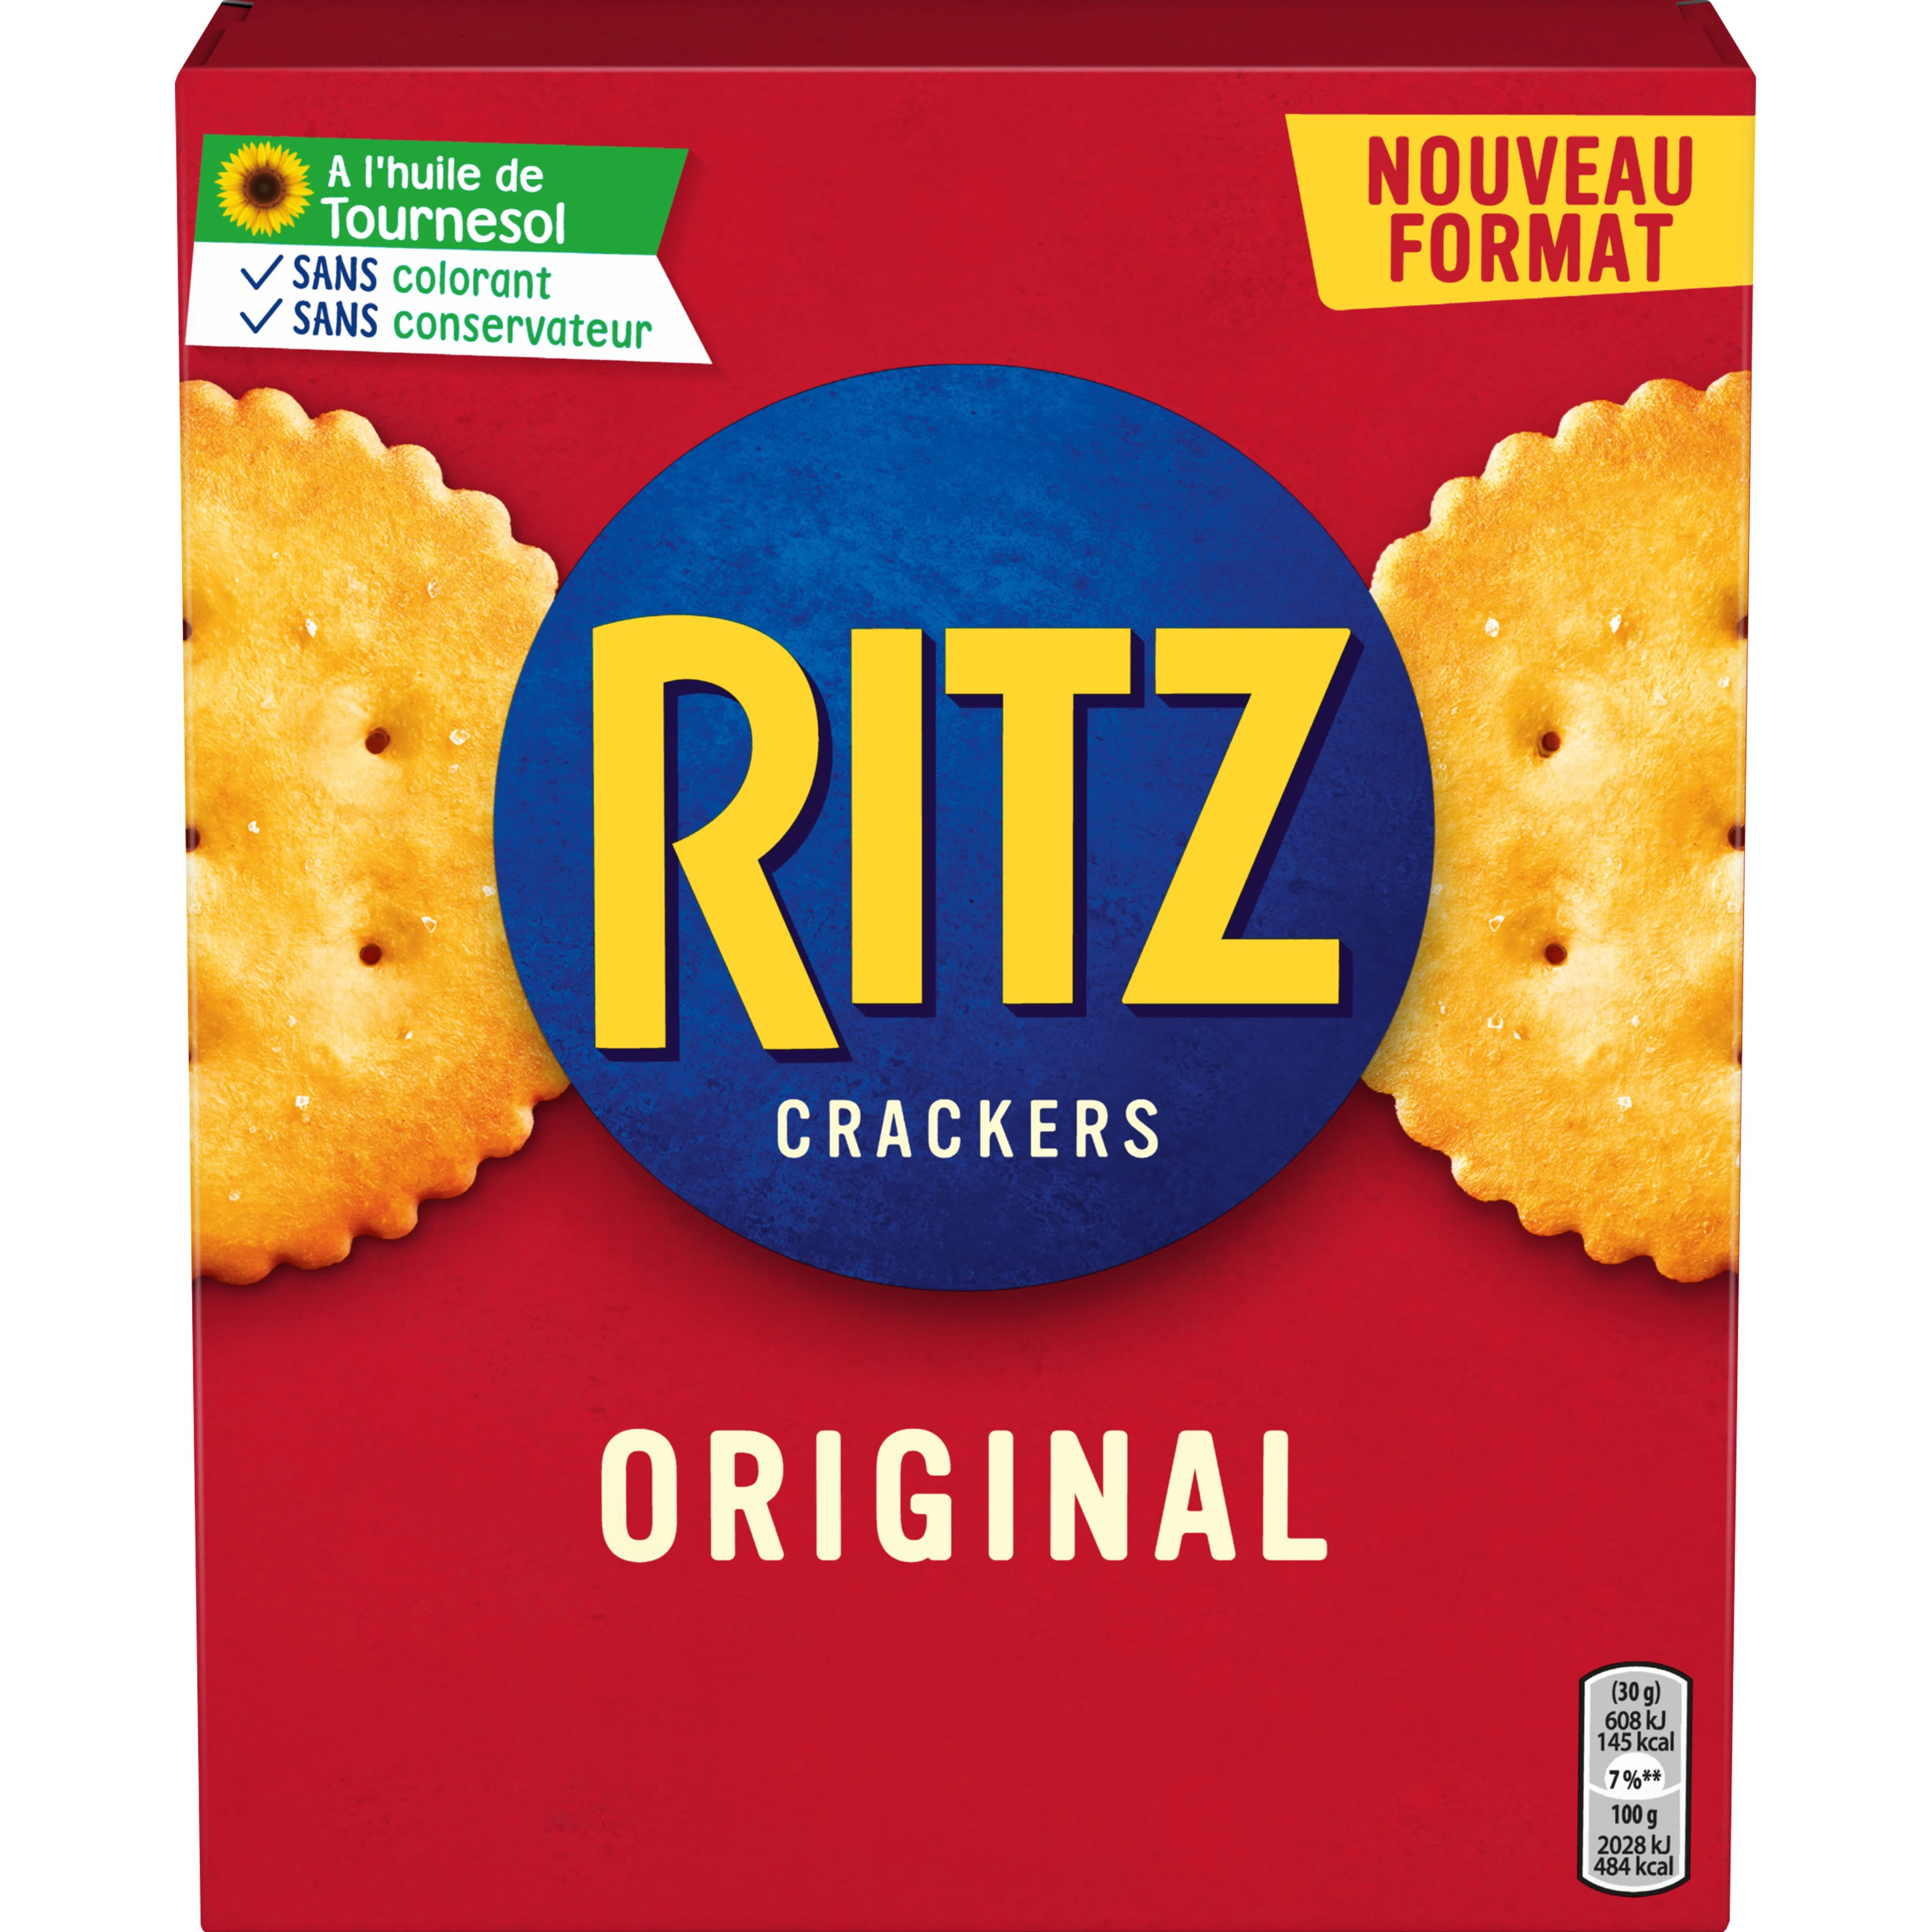 Biscoitos Aperitivos Originais Crackers, 200g -  RITZ